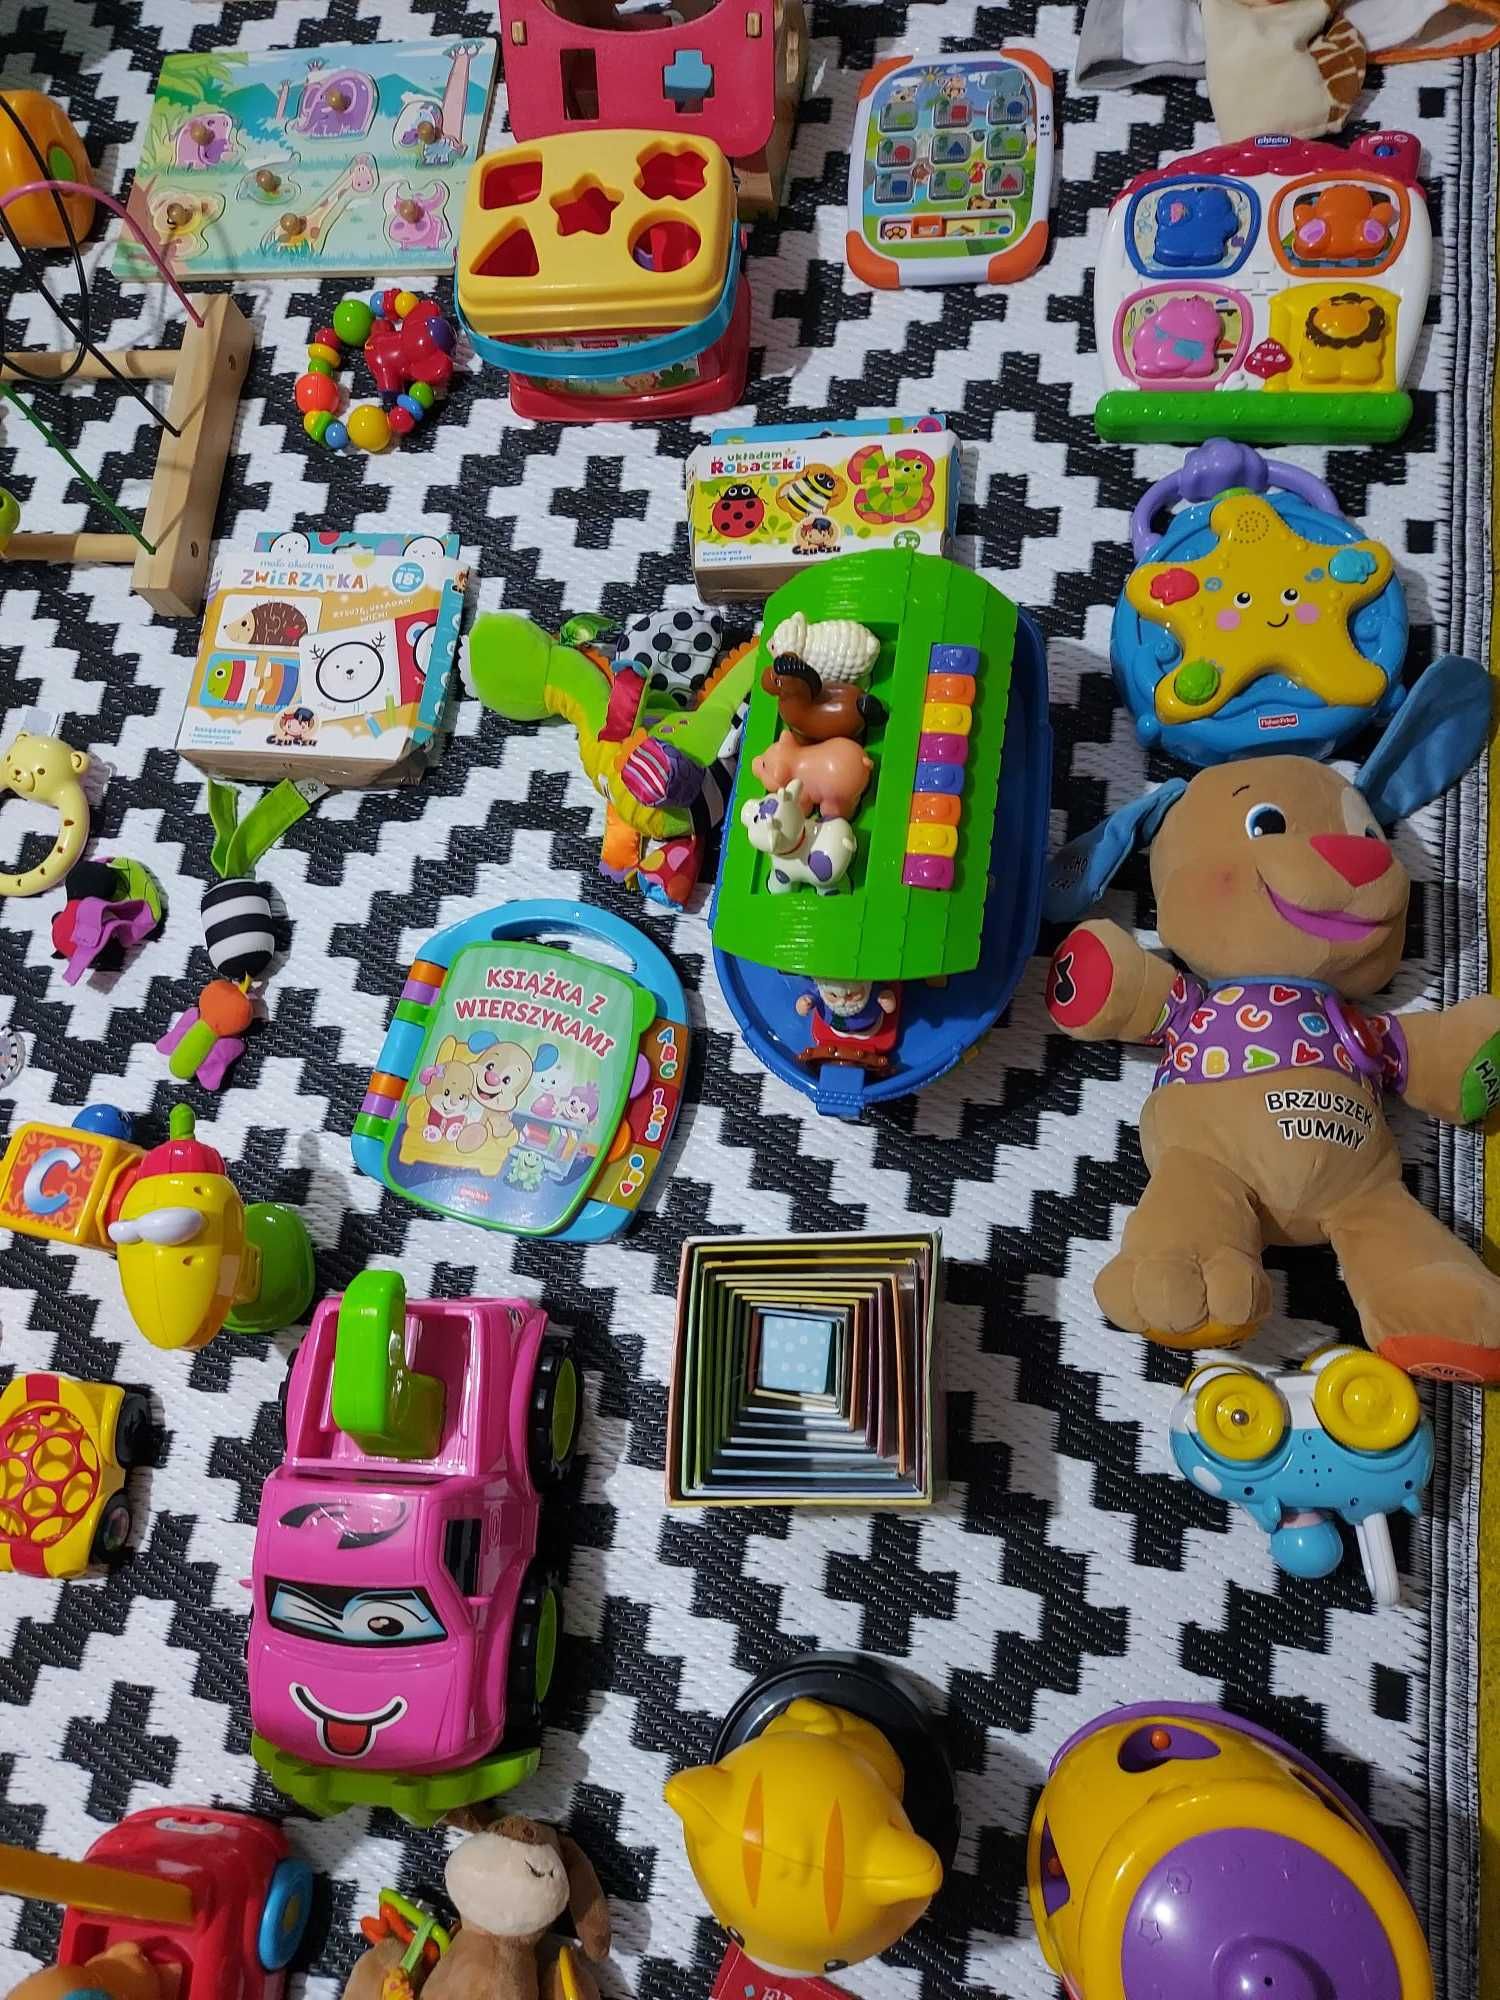 Zabawki, zestaw zabawek, wiek 0-2 latka, bardzo dobry stan